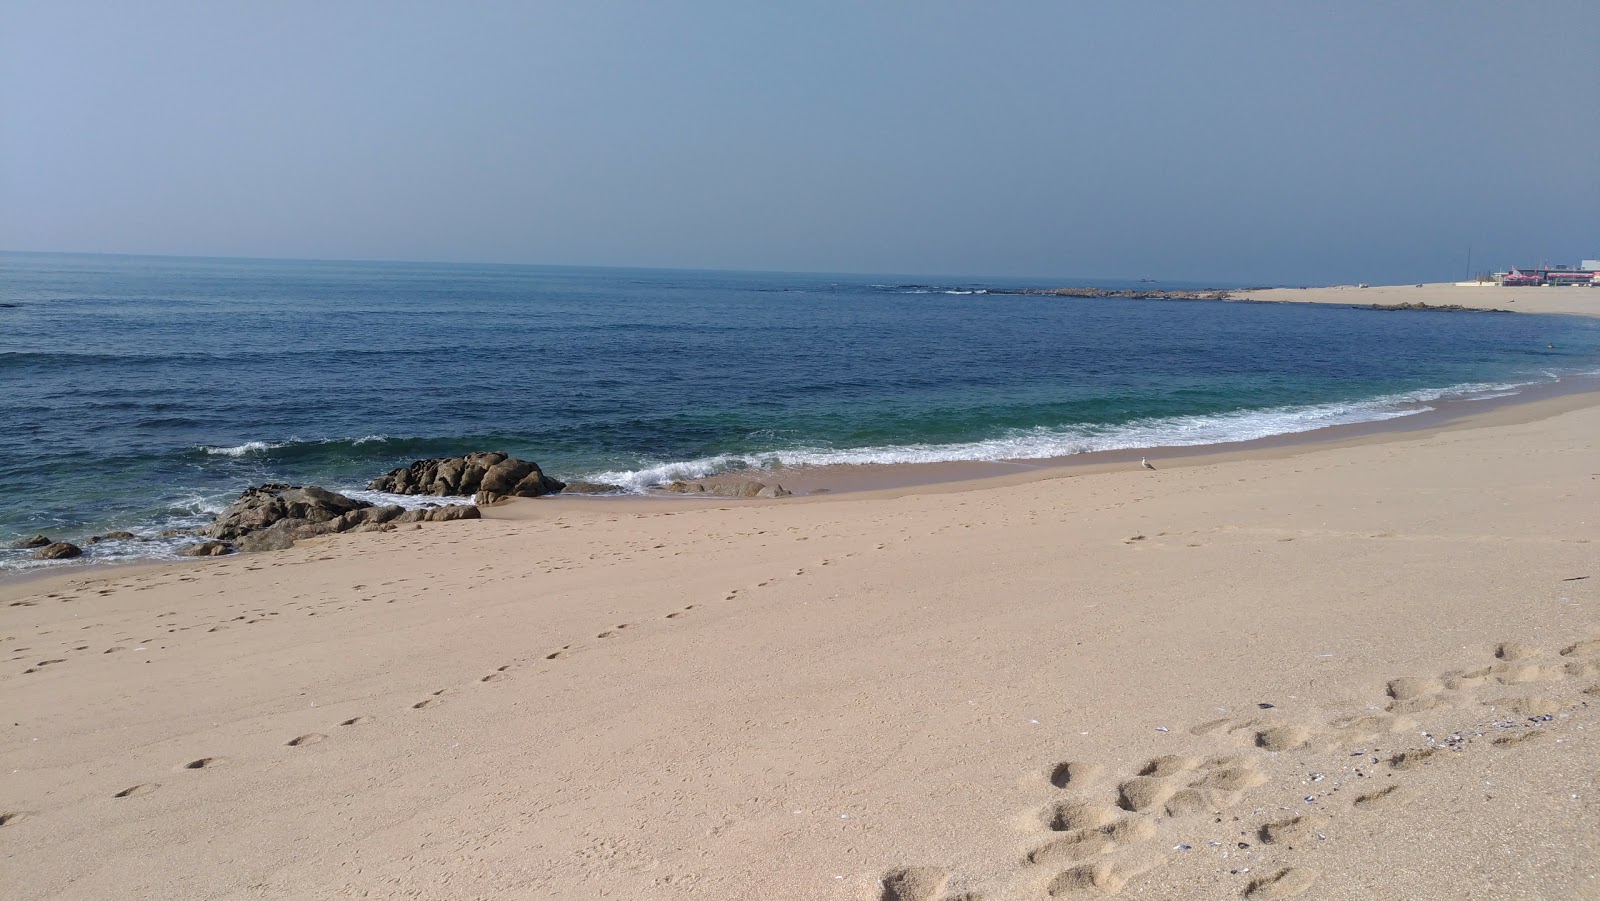 Zdjęcie Beach Carvalhido z powierzchnią jasny, drobny piasek